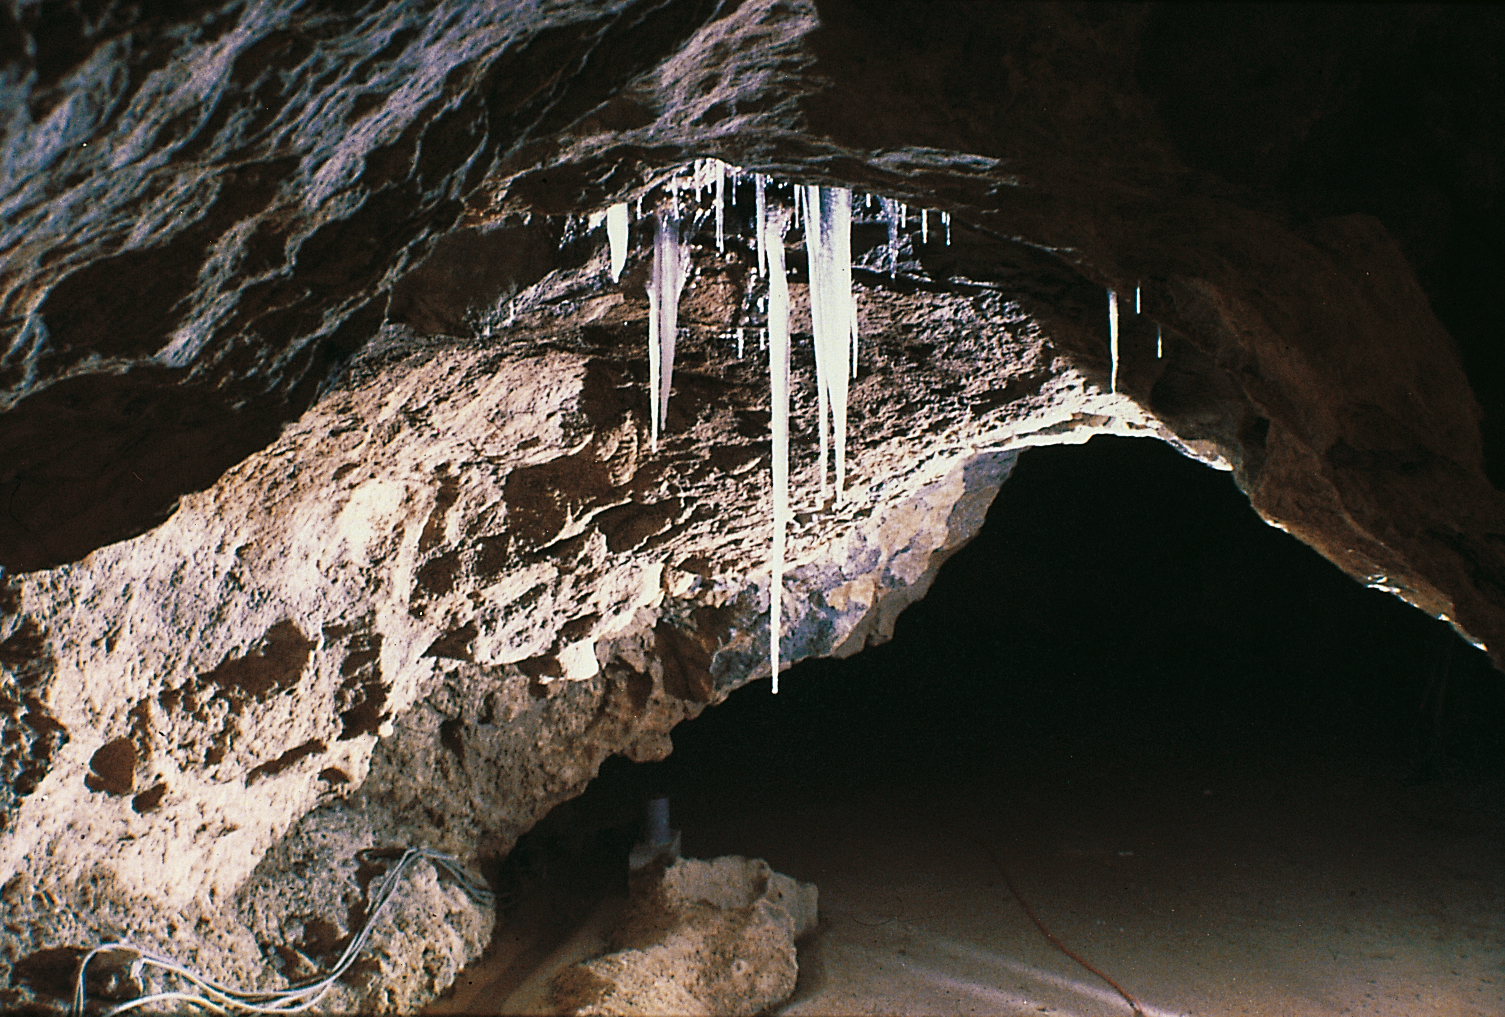 stalattiti di ghiaccio19